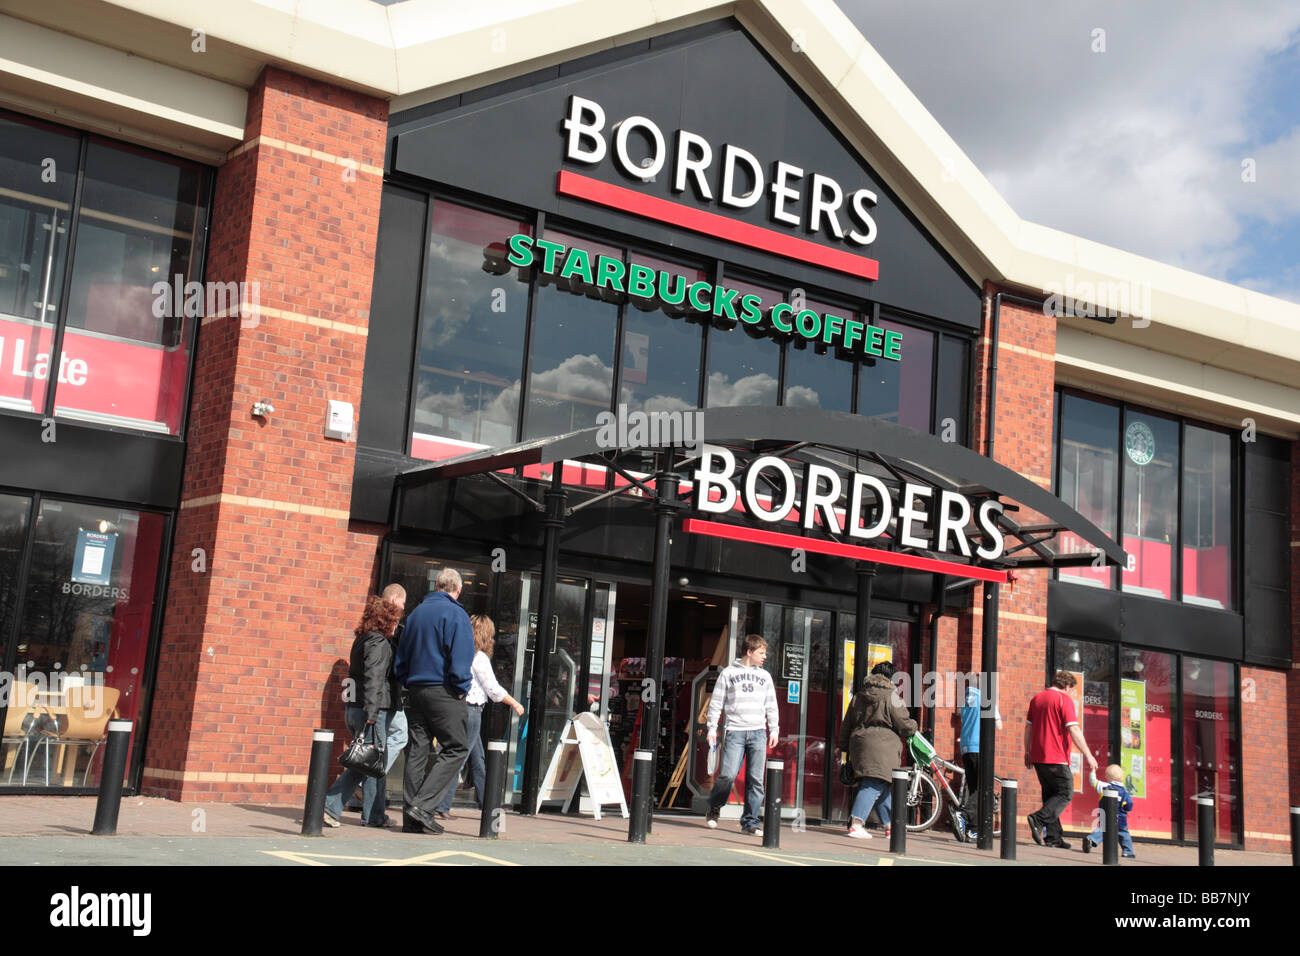 Borders Bookshop, Riverside Retail Park, Warrington Stock Photo